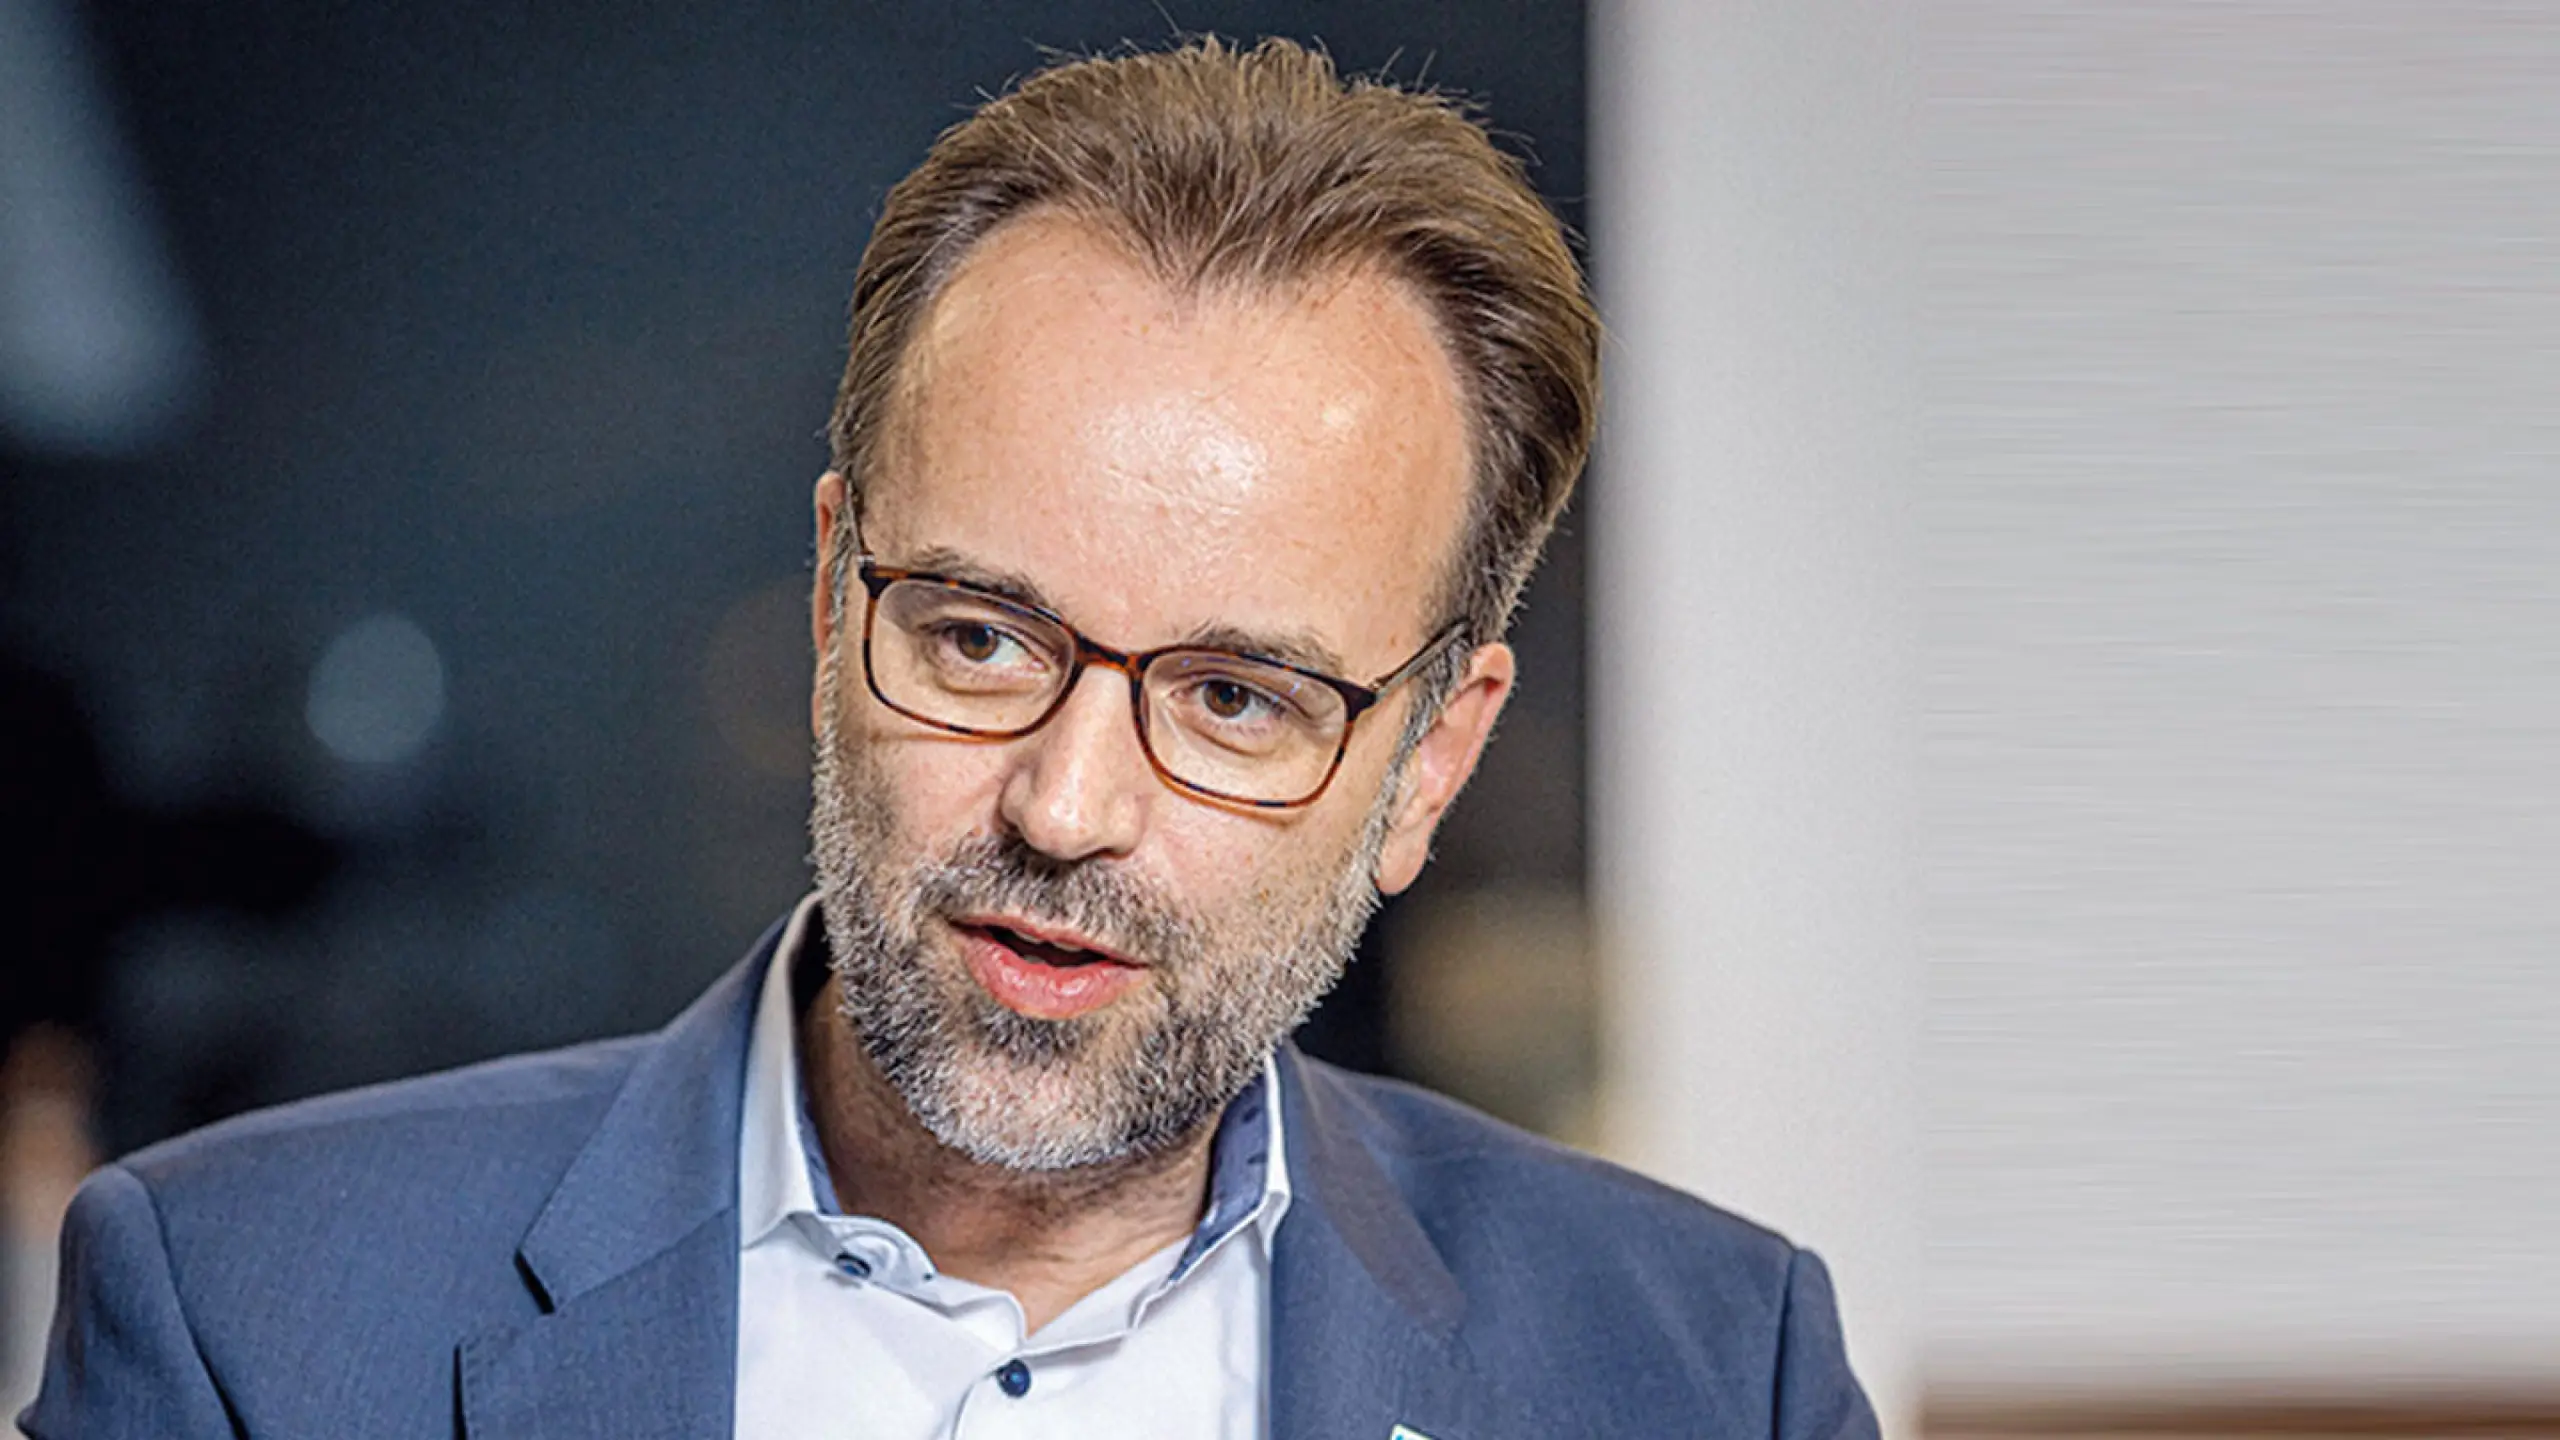 Borealis CEO Thomas Gangl: "Großzügigkeit macht glücklich" [INTERVIEW]